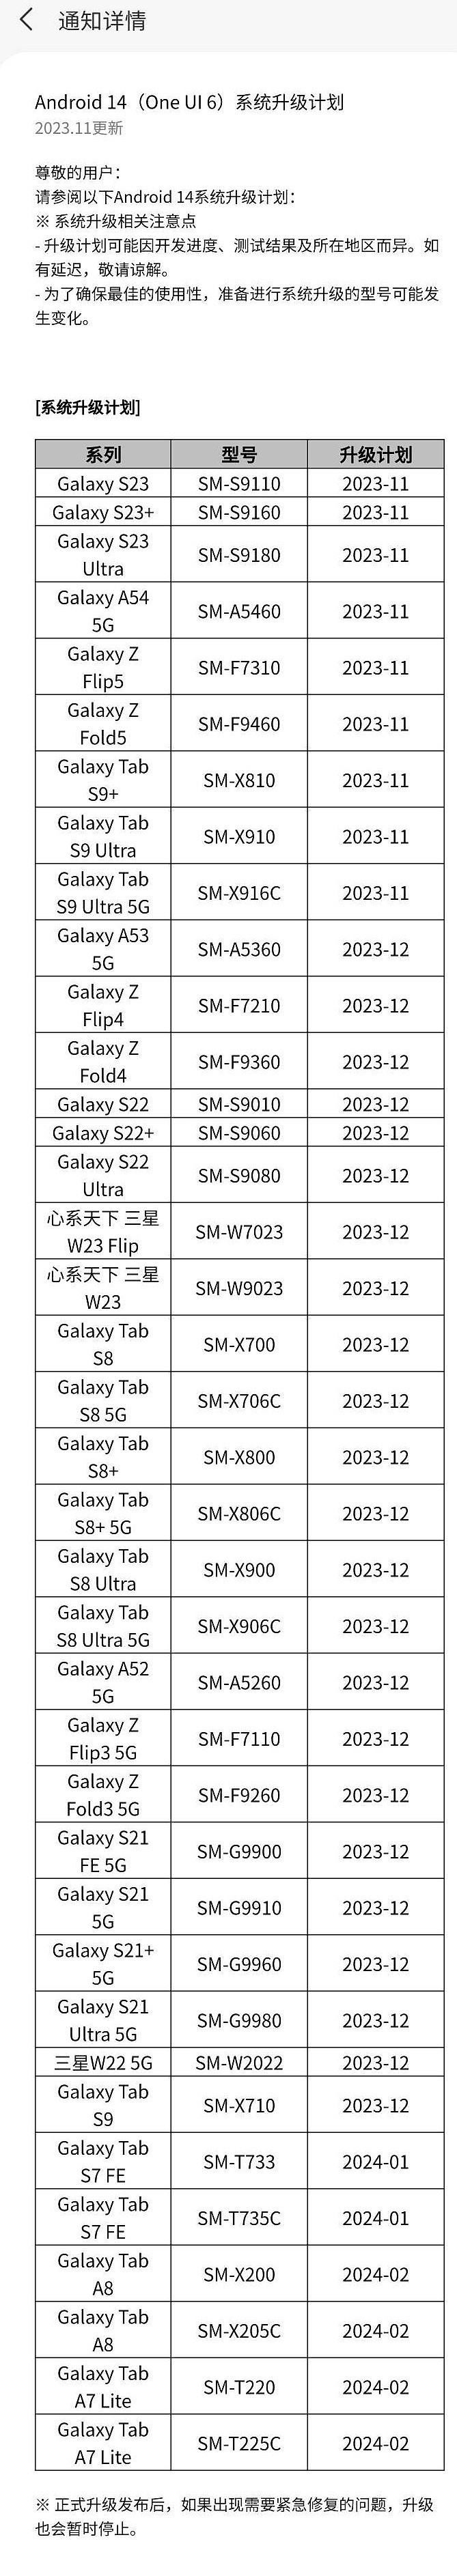 三星 One UI 6 x 安卓 14 国行推送时间表发布，Galaxy 手机平板本月开启升级 - 2